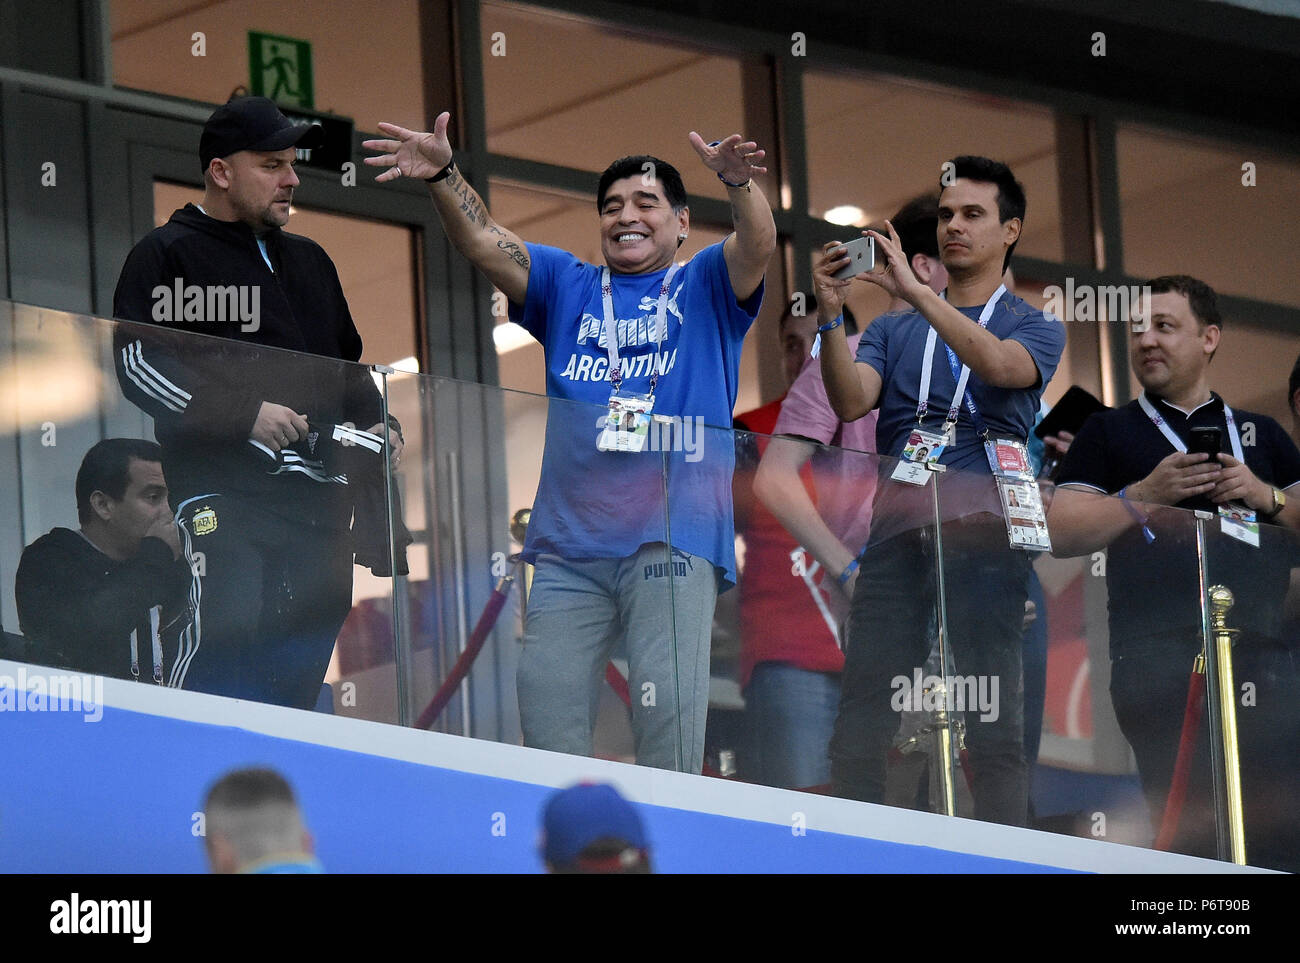 NIZHNIY Novgorod, Rusia - 21 DE JUNIO: Diego Maradona durante la Copa  Mundial de la FIFA 2018 Rusia grupo D partido entre Argentina y Croacia en  Nizhniy Novgorod Stadium el 21 de